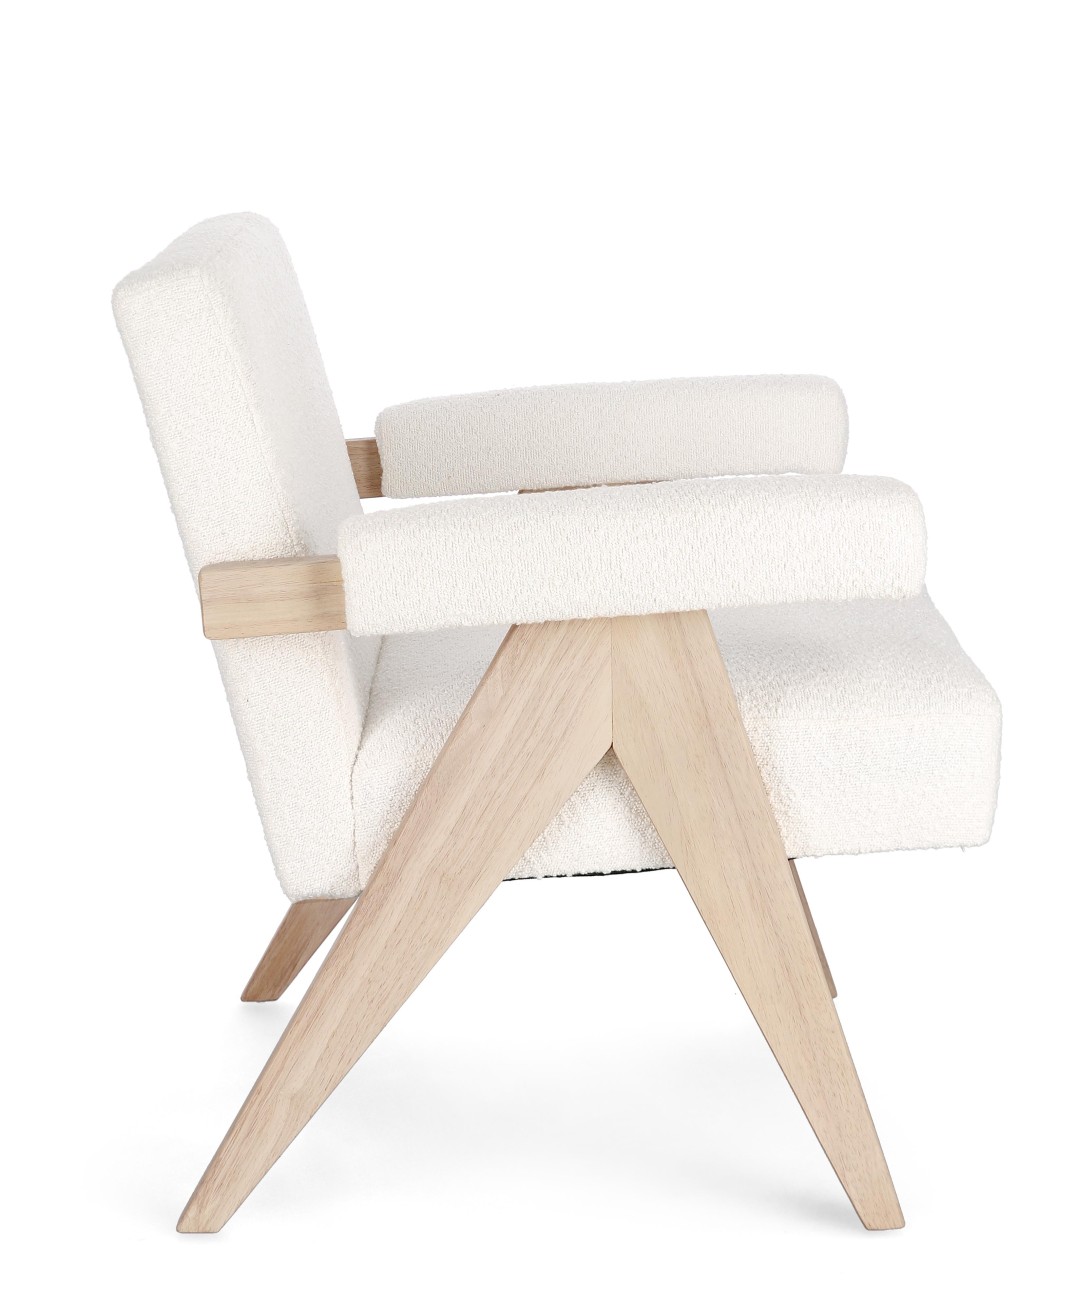 Der Sessel Faiza überzeugt mit seinem modernen Stil. Gefertigt wurde er aus Stoff, welcher einen weißen Farbton besitzt. Das Gestell ist aus Kautschuk und hat eine natürliche Farbe. Der Sessel besitzt eine Sitzhöhe von 46 cm.